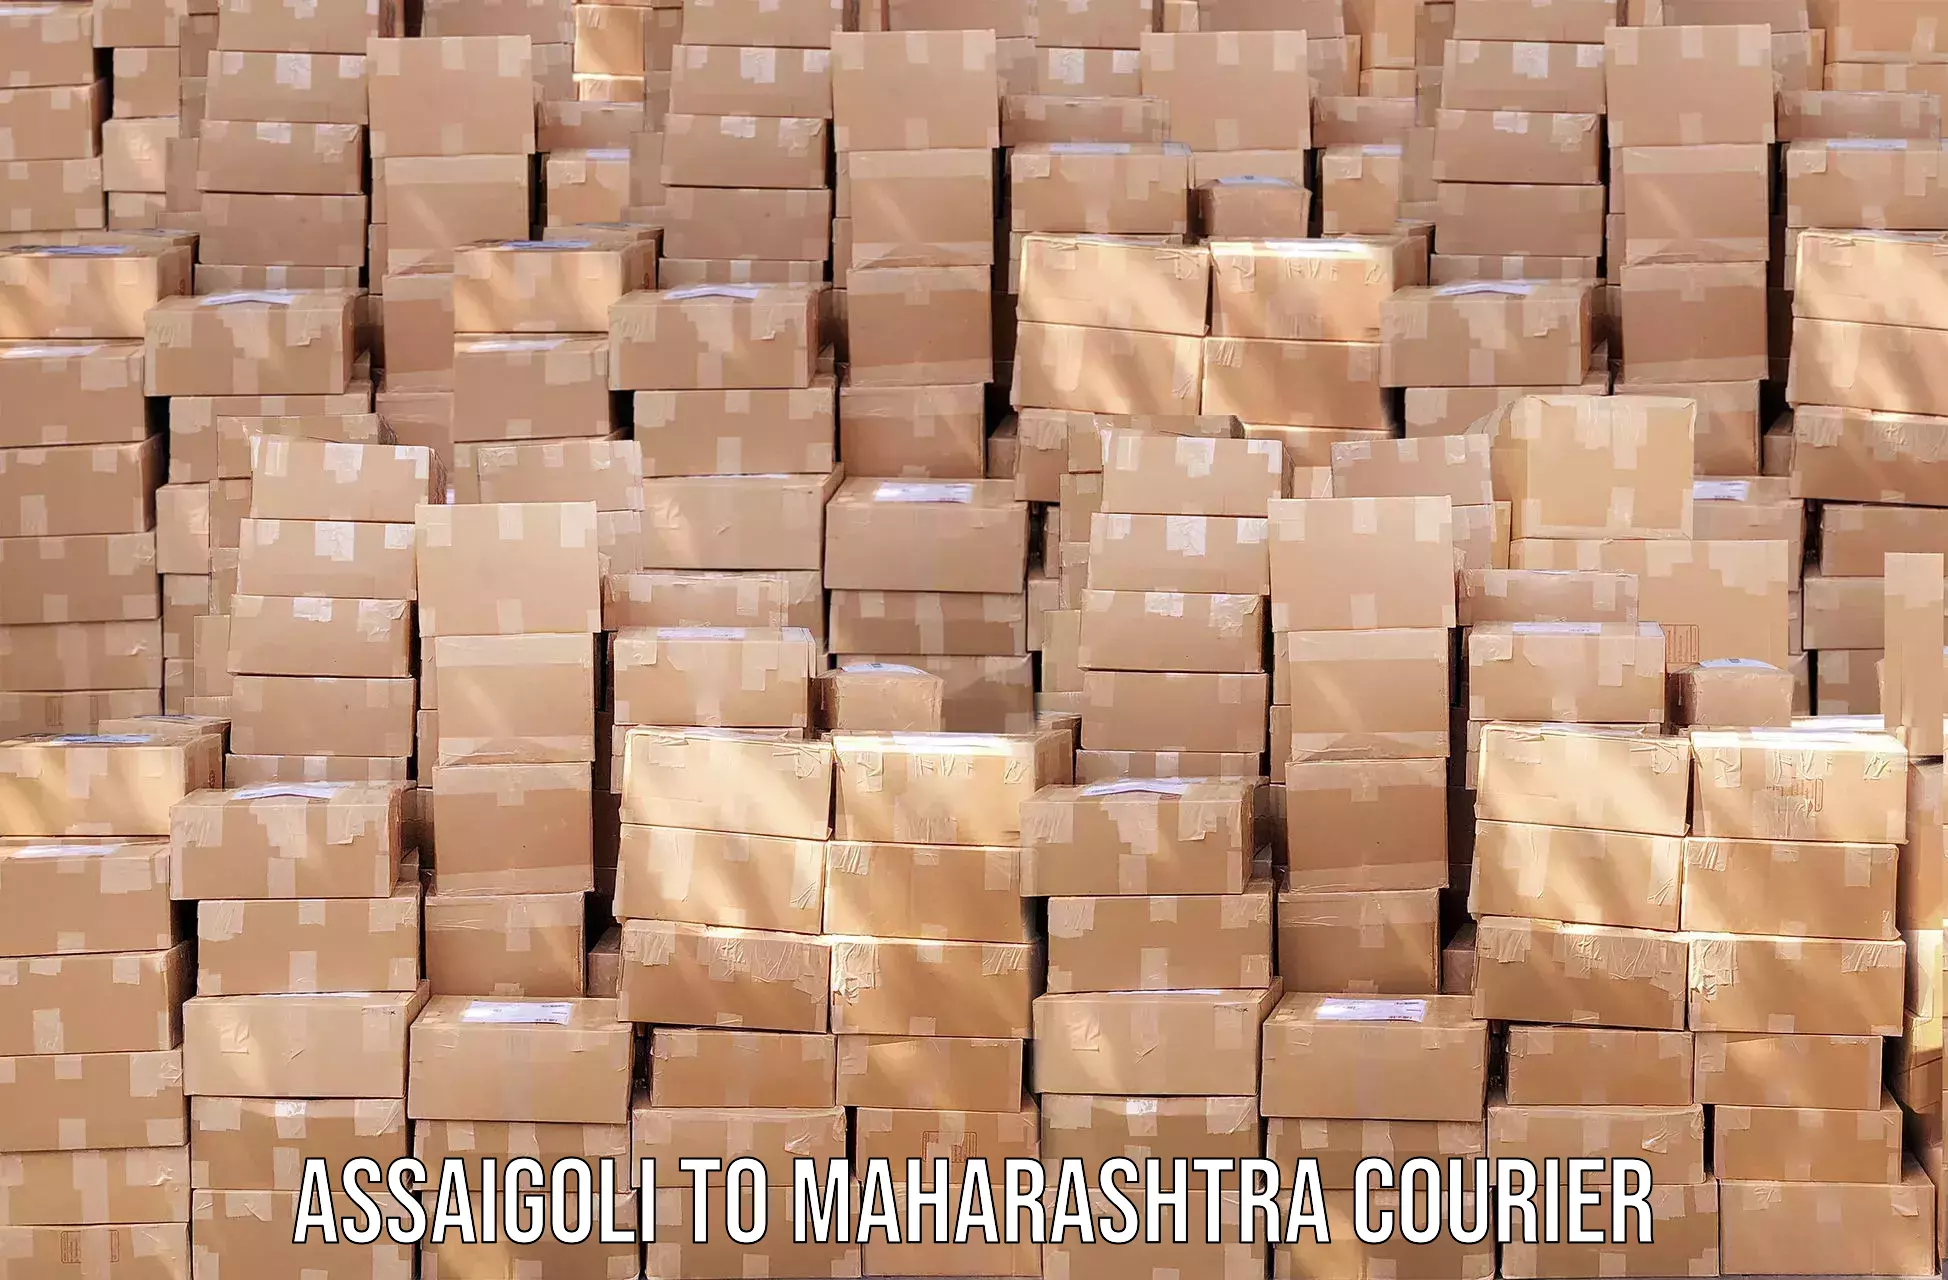 Express courier facilities Assaigoli to Maharashtra